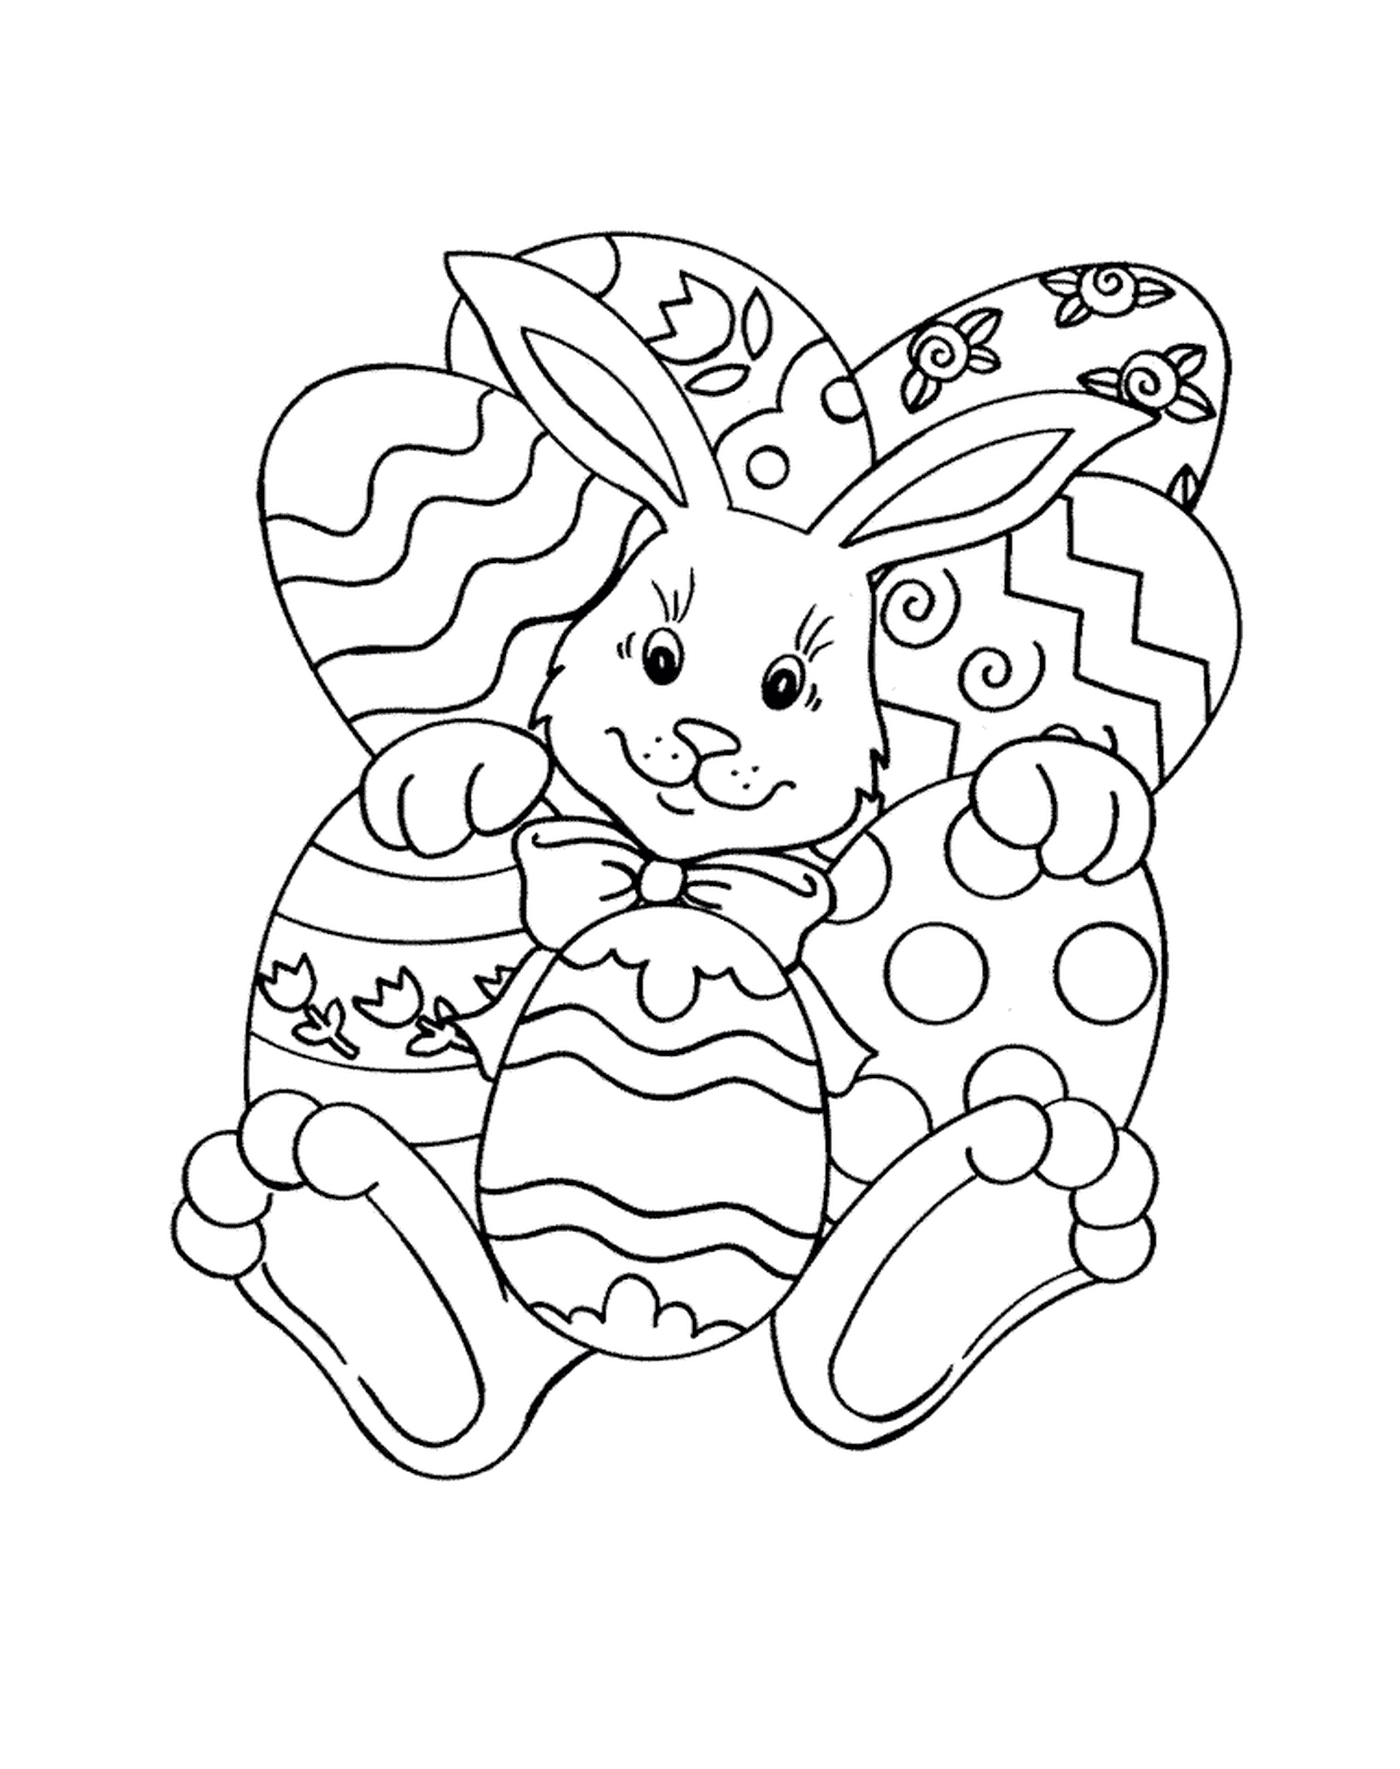  可爱的复活节兔子 